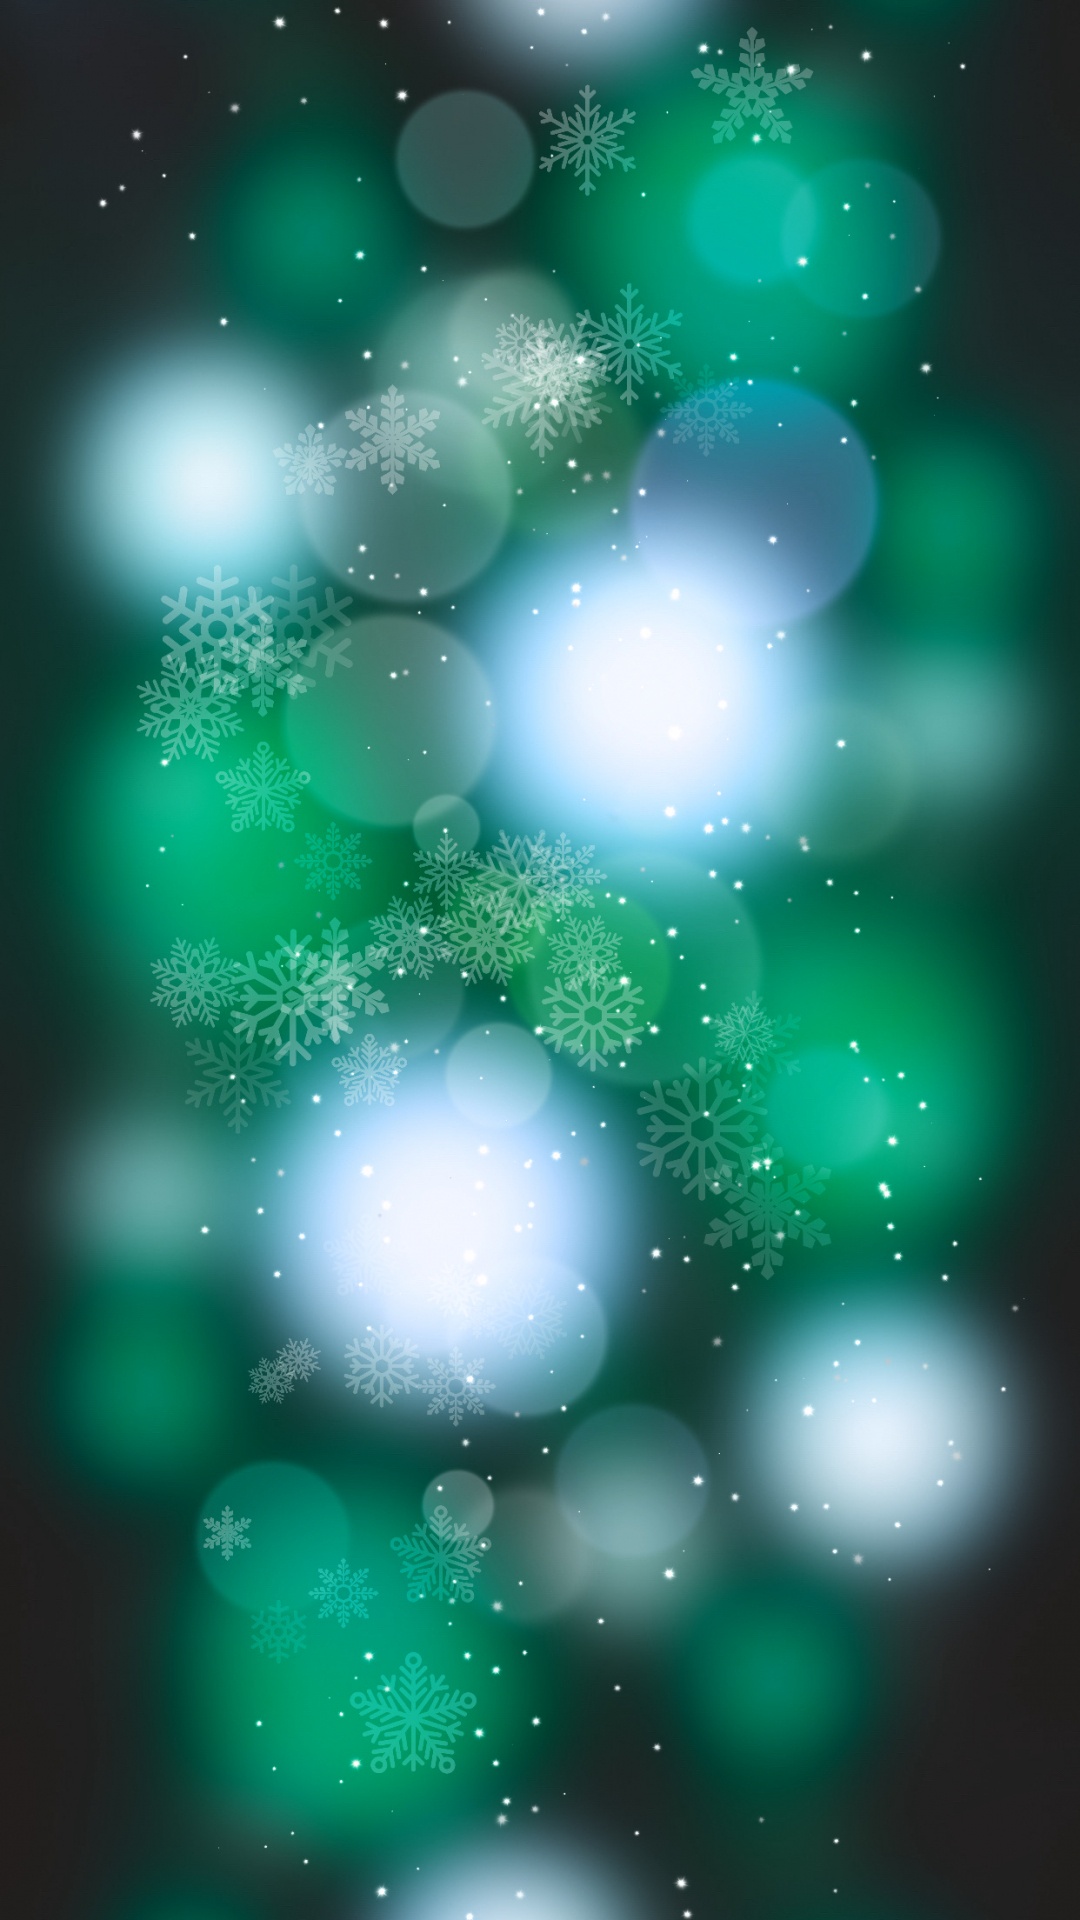 Pazifikblau, IOS 14, Azure, Astronomisches Objekt, Aqua. Wallpaper in 1080x1920 Resolution